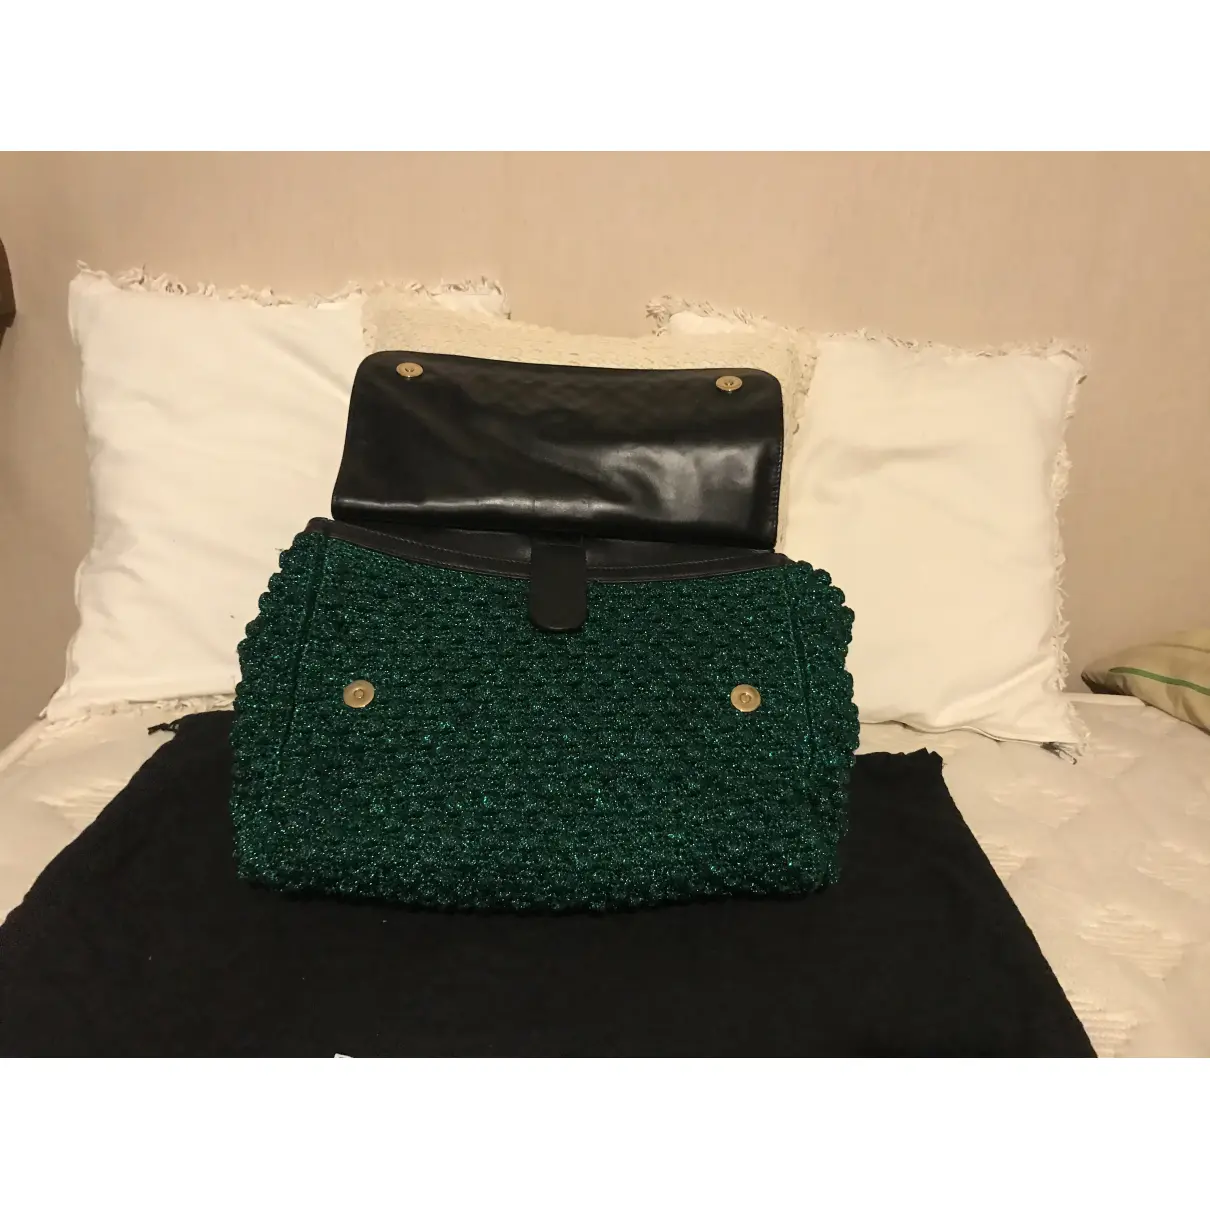 Sicily wool handbag Dolce & Gabbana